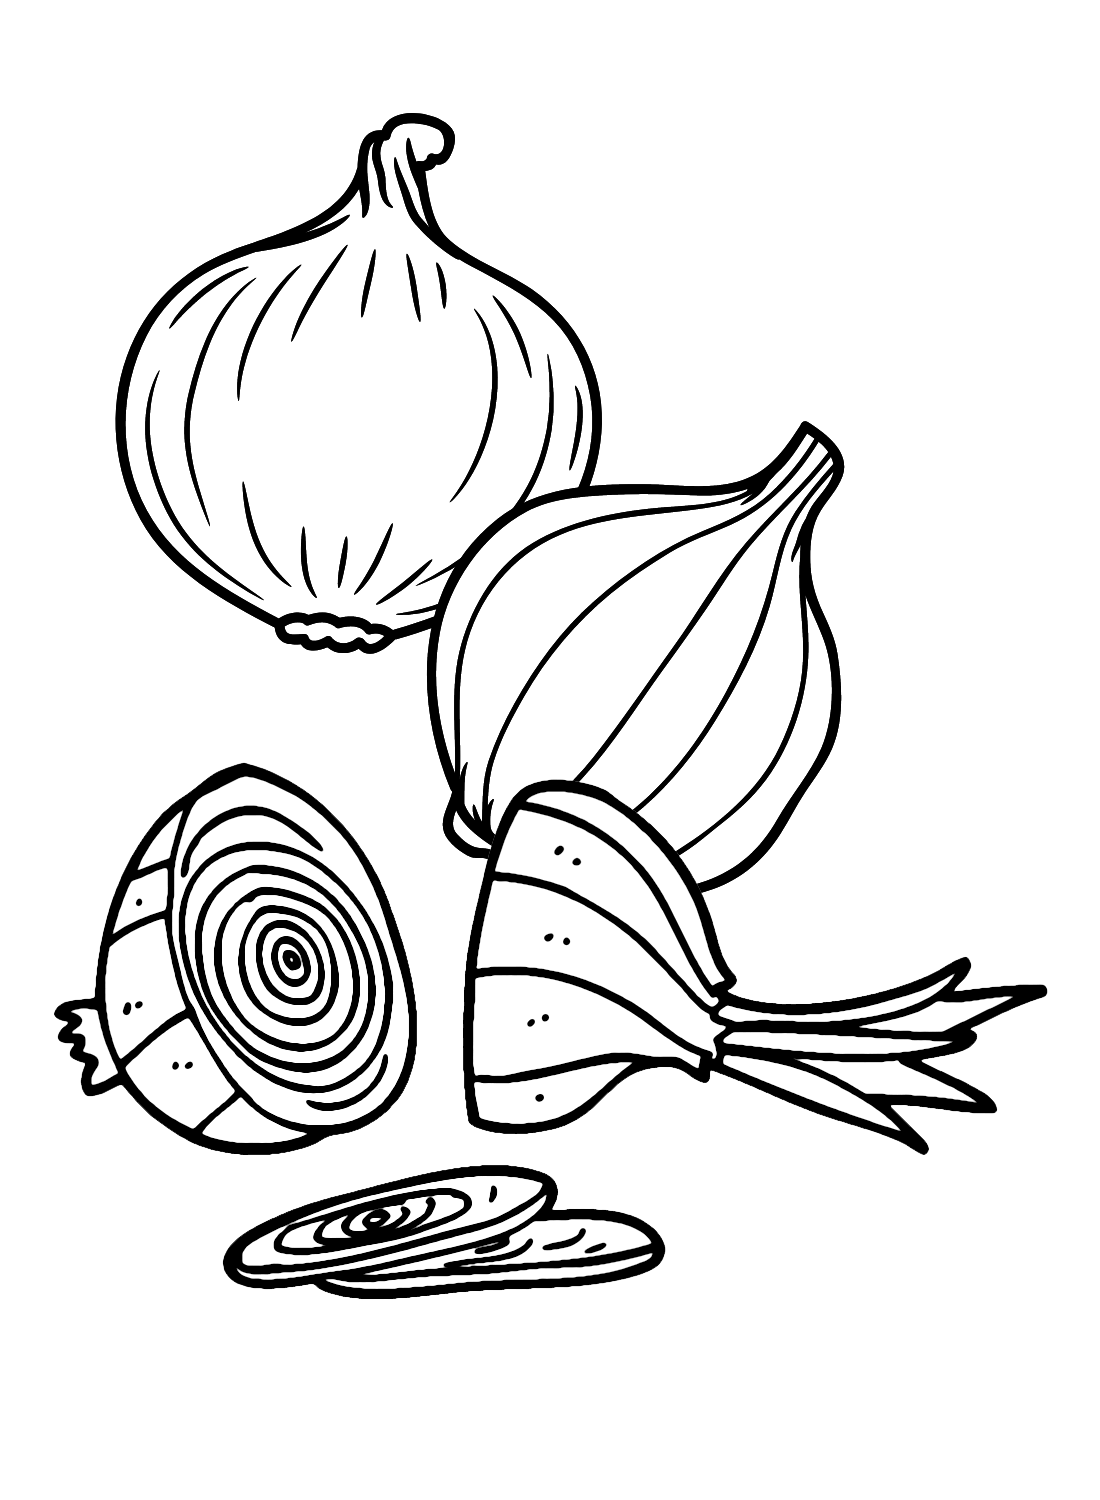 garlic coloring page